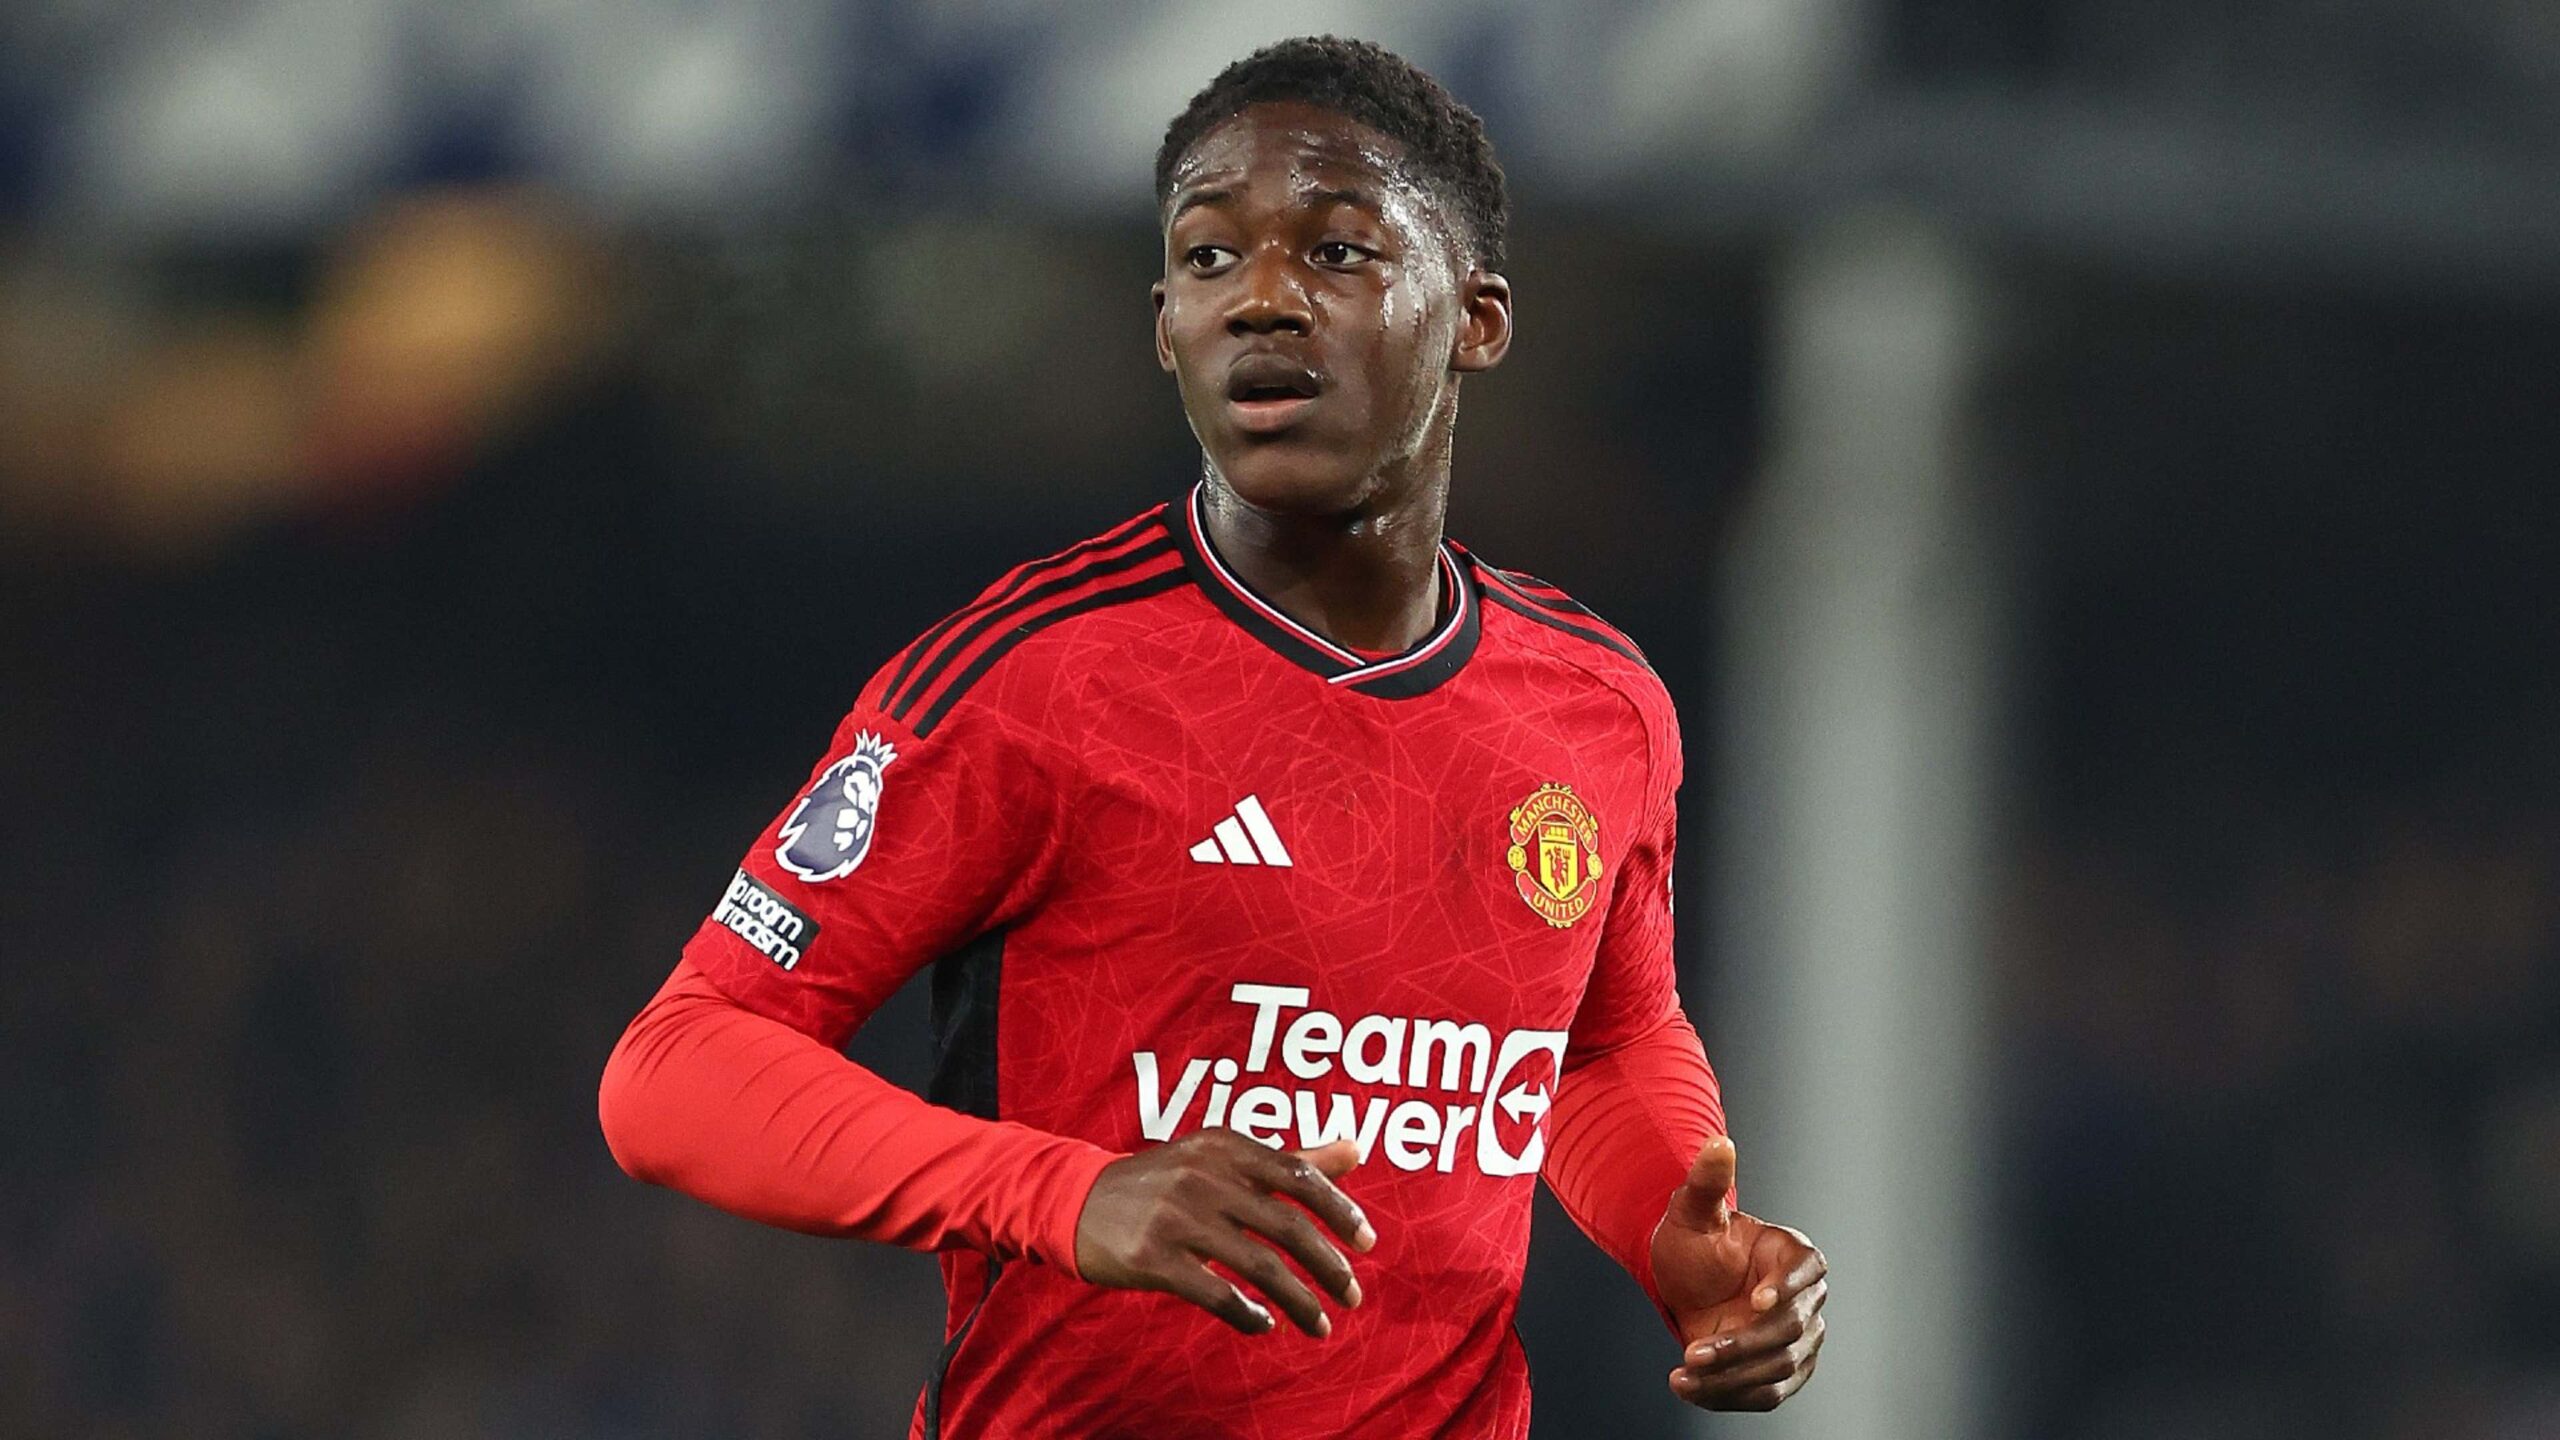 GFA shows interest in Manchester United’s 18-year-old midfielder, Kobbie Mainoo